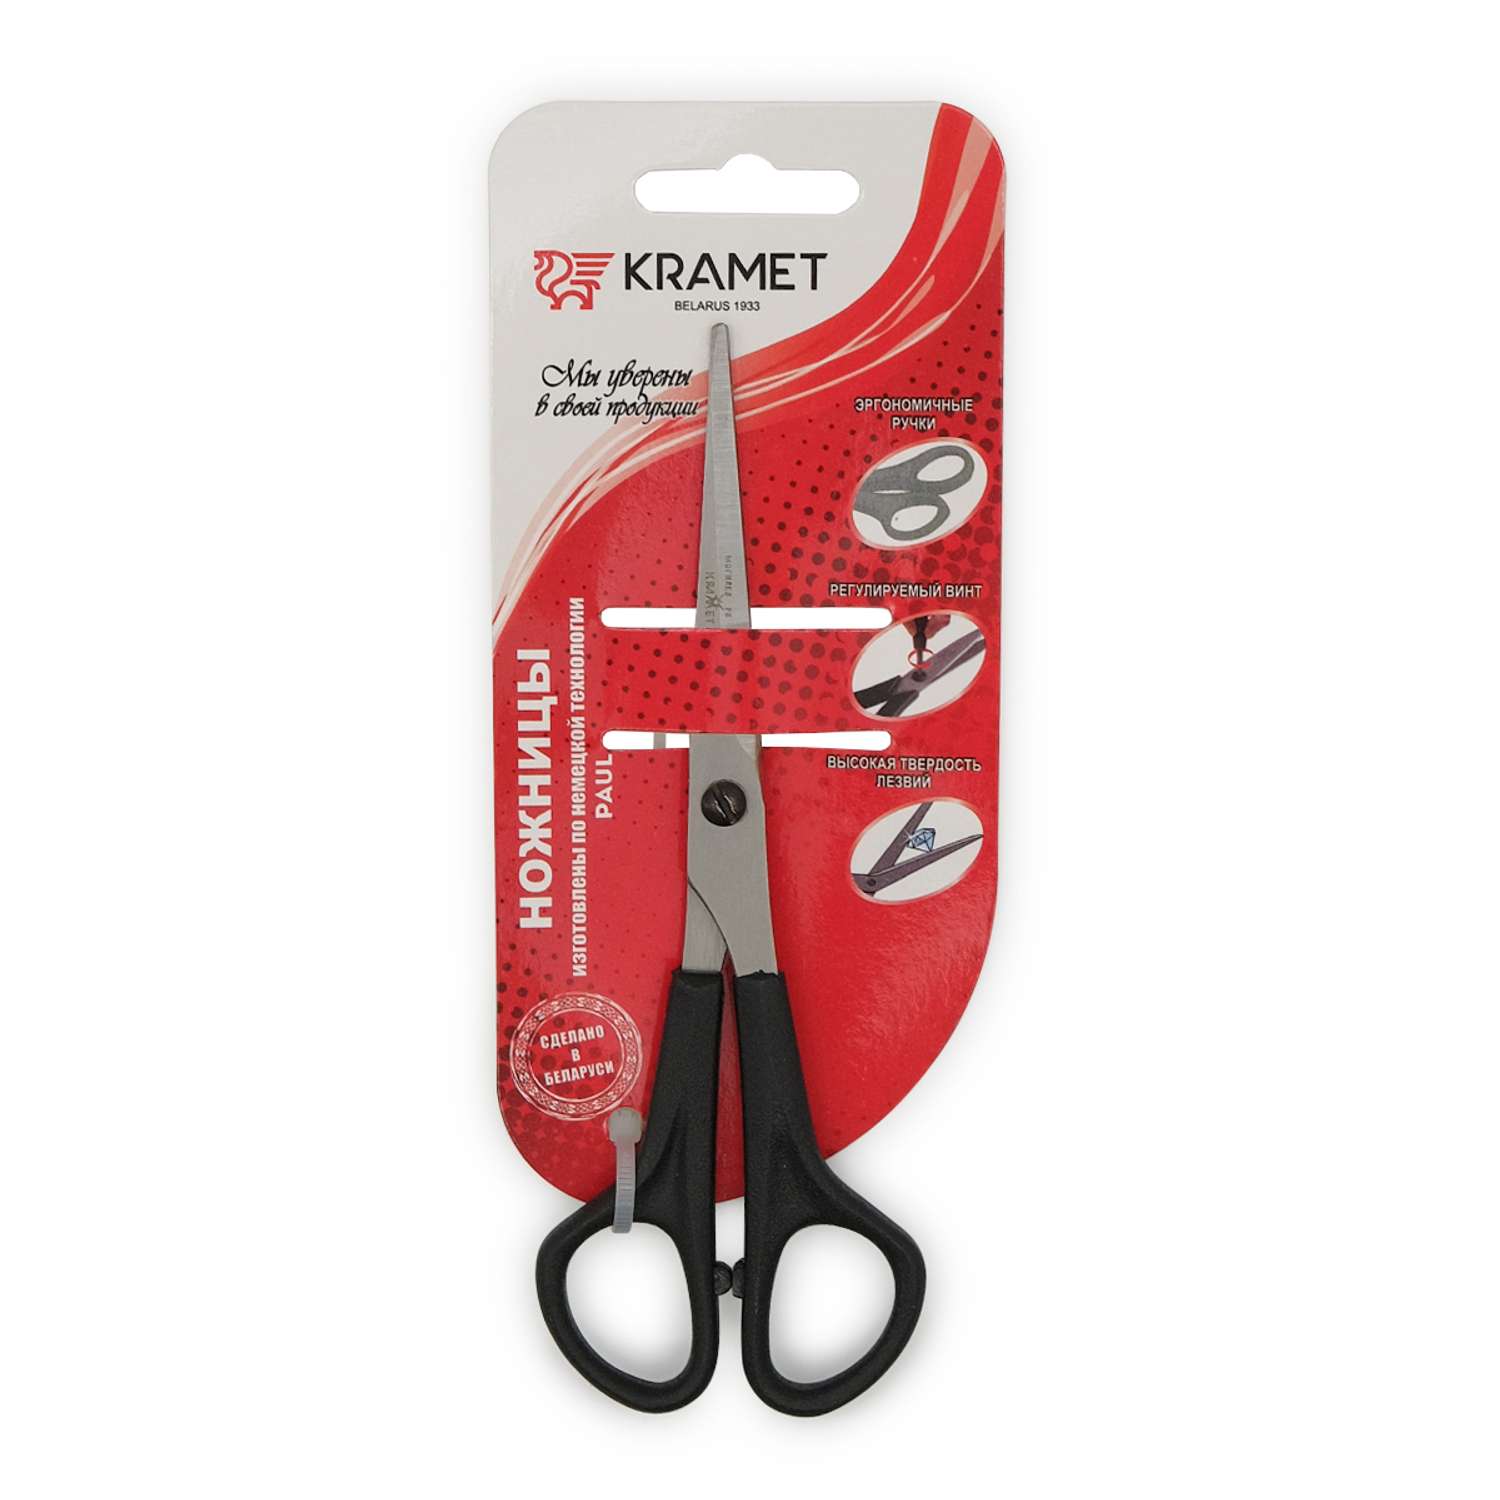 Ножницы универсальные KARMET стальные с удобными пластиковыми ручками и винтом для регулировки хода 16 см - фото 3